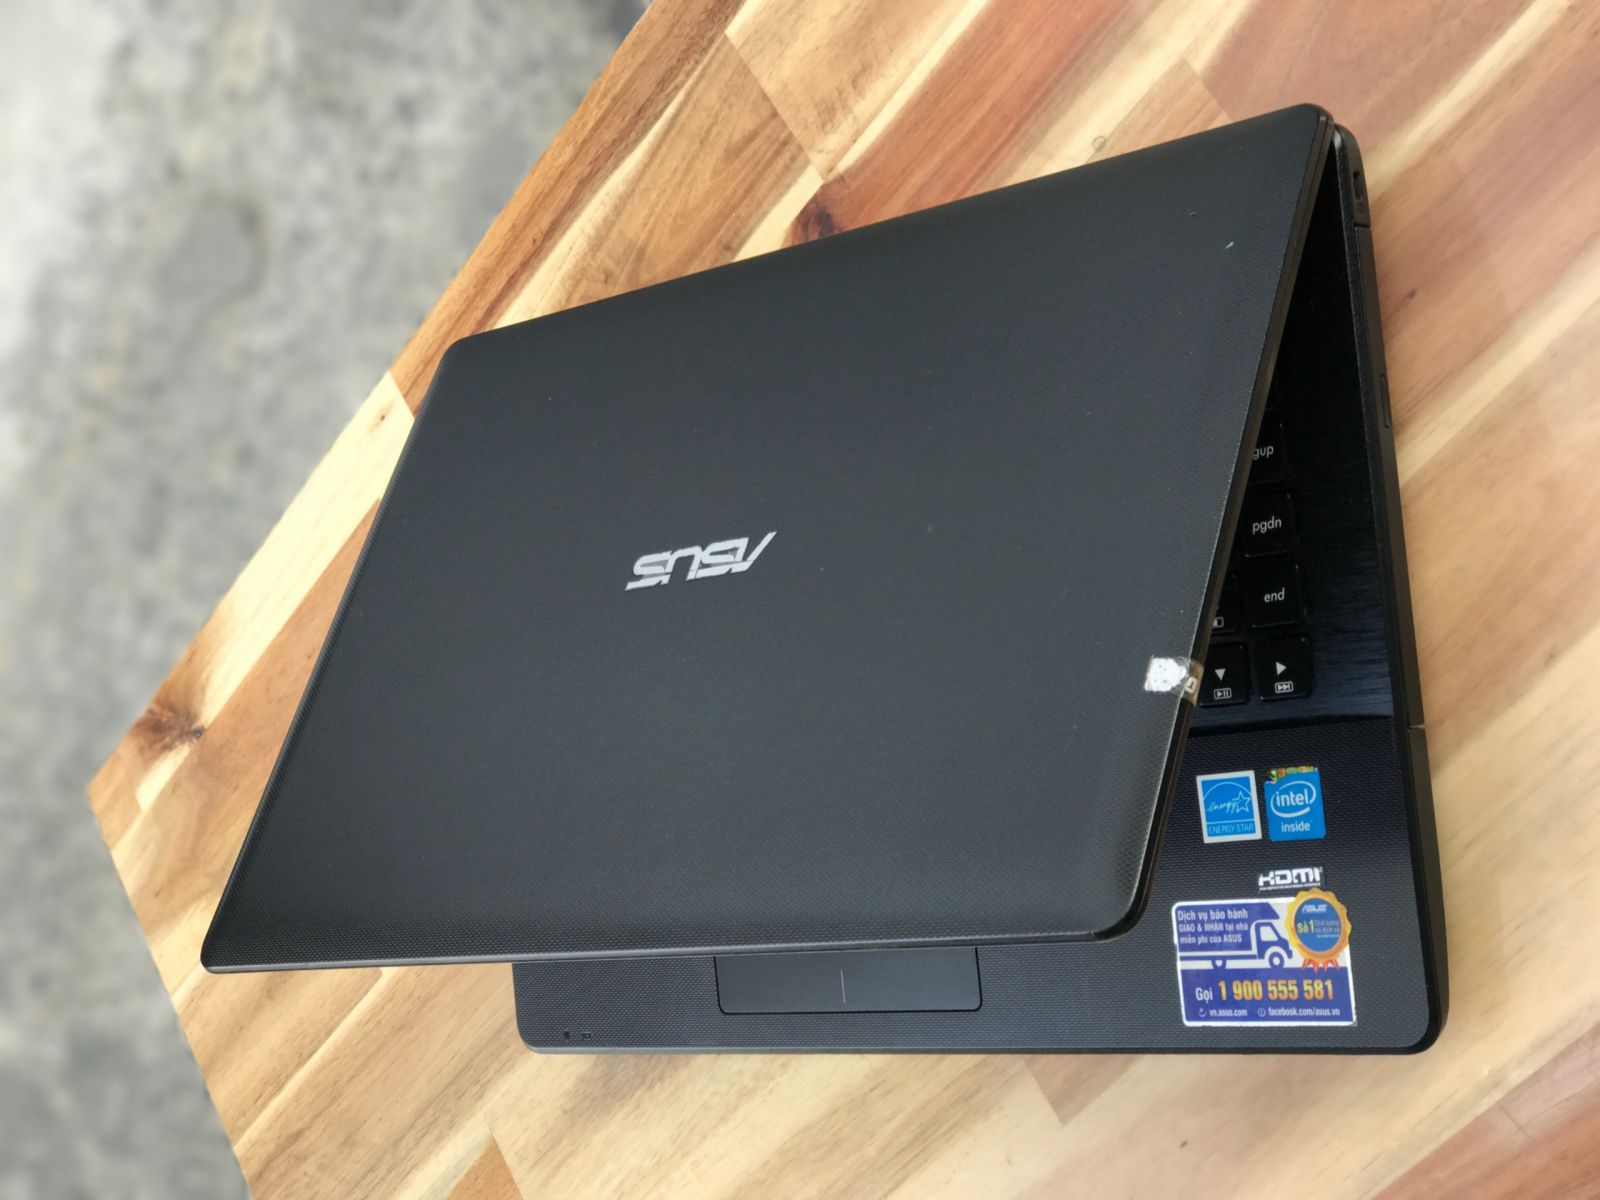 Laptop Asus X452, i5 3337U 4G 500G Vga 2G Đẹp zin 100% Giá rẻ4